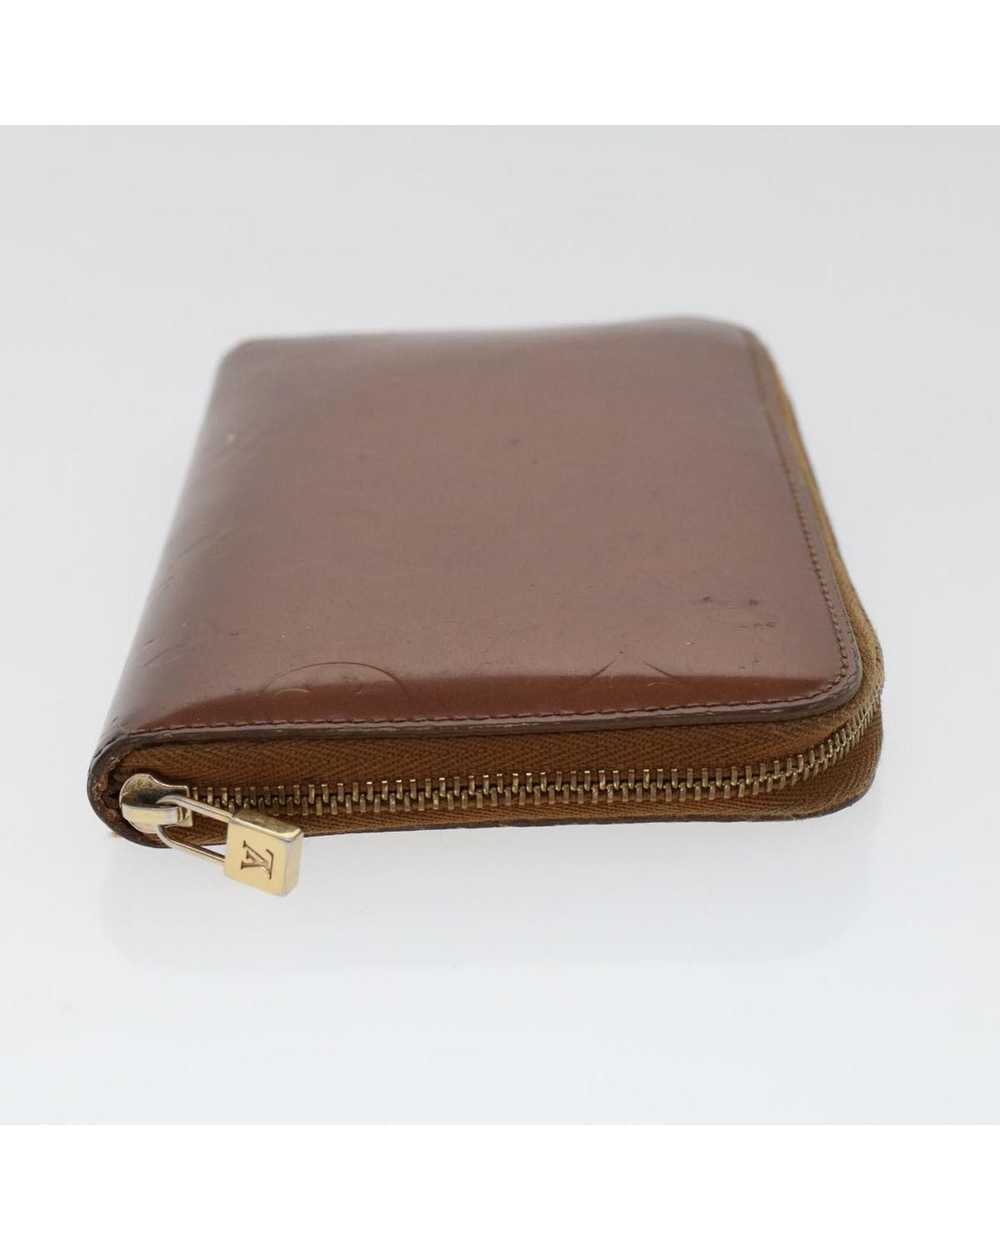 Louis Vuitton Bronze Patent Leather Long Wallet - image 5